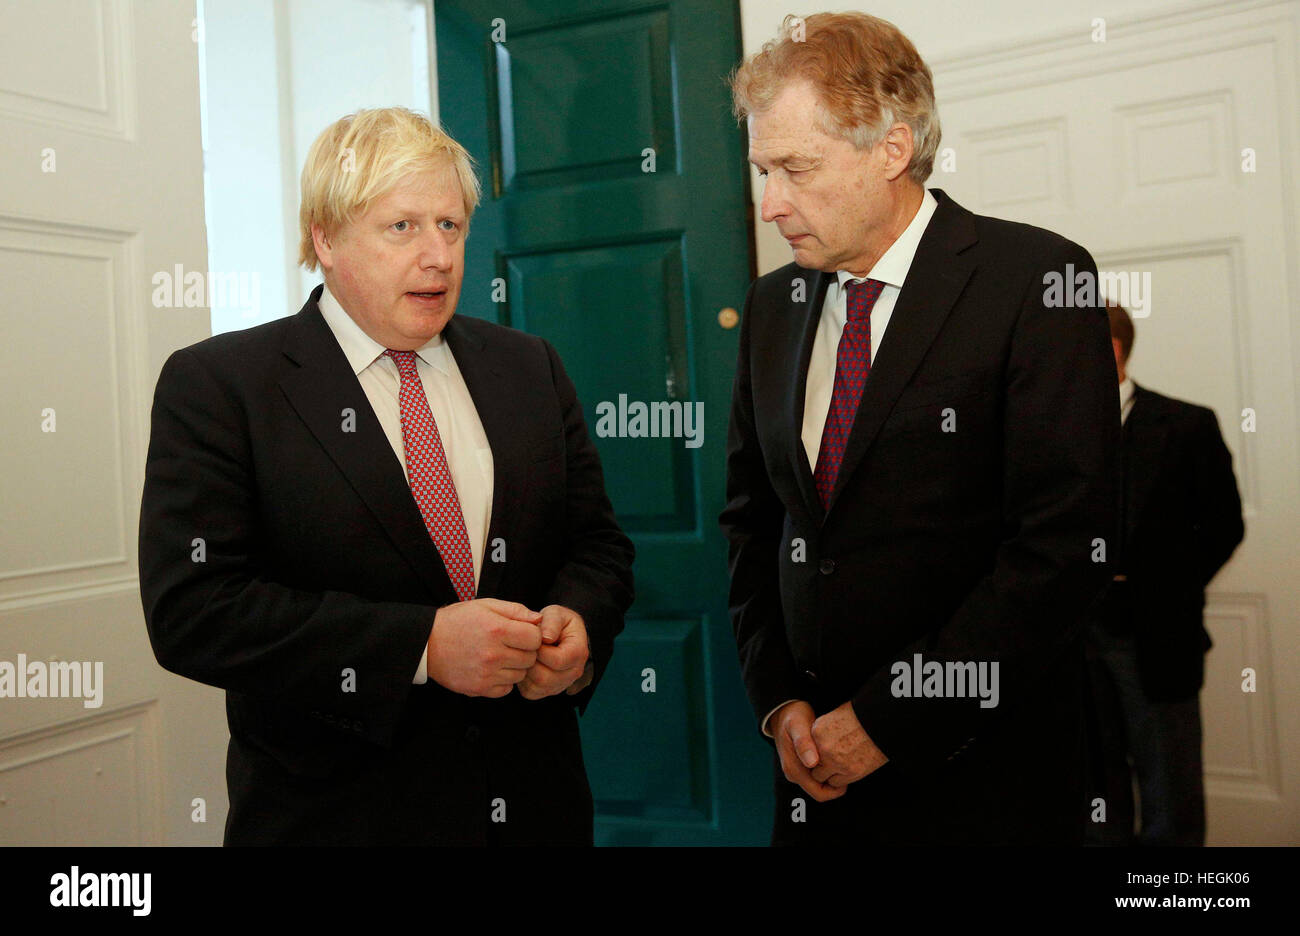 Ambasciatore tedesco Peter Ammon saluta il Segretario degli esteri Boris Johnson come egli arriva a firmare un libro di cordoglio per le vittime del carrello Berlino attacco, all'ambasciata tedesca a Londra. Foto Stock